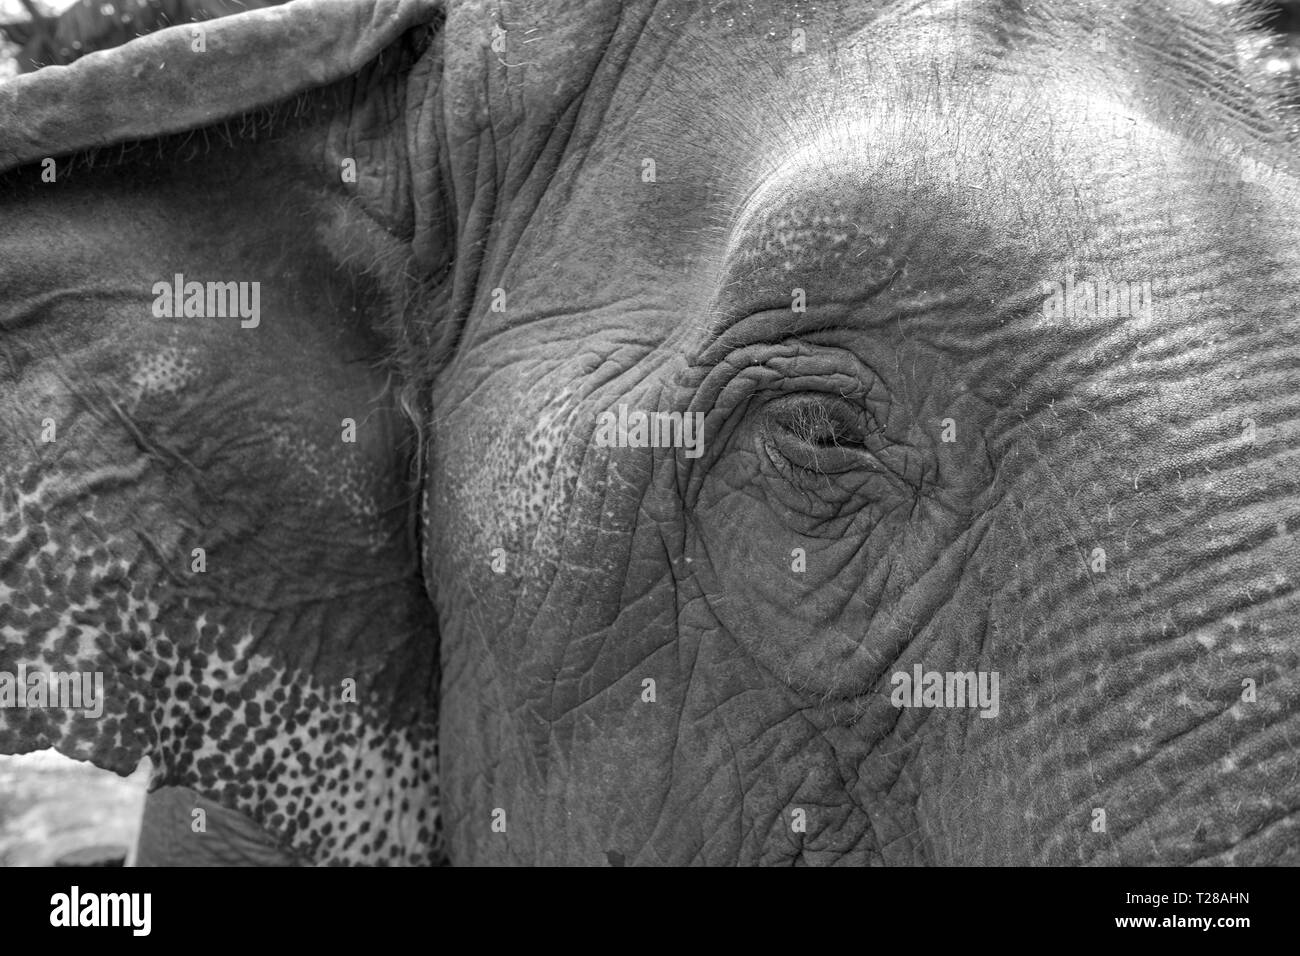 Cierre los ojos del elefante asiático con filtro monocromático imagen. Foto de stock